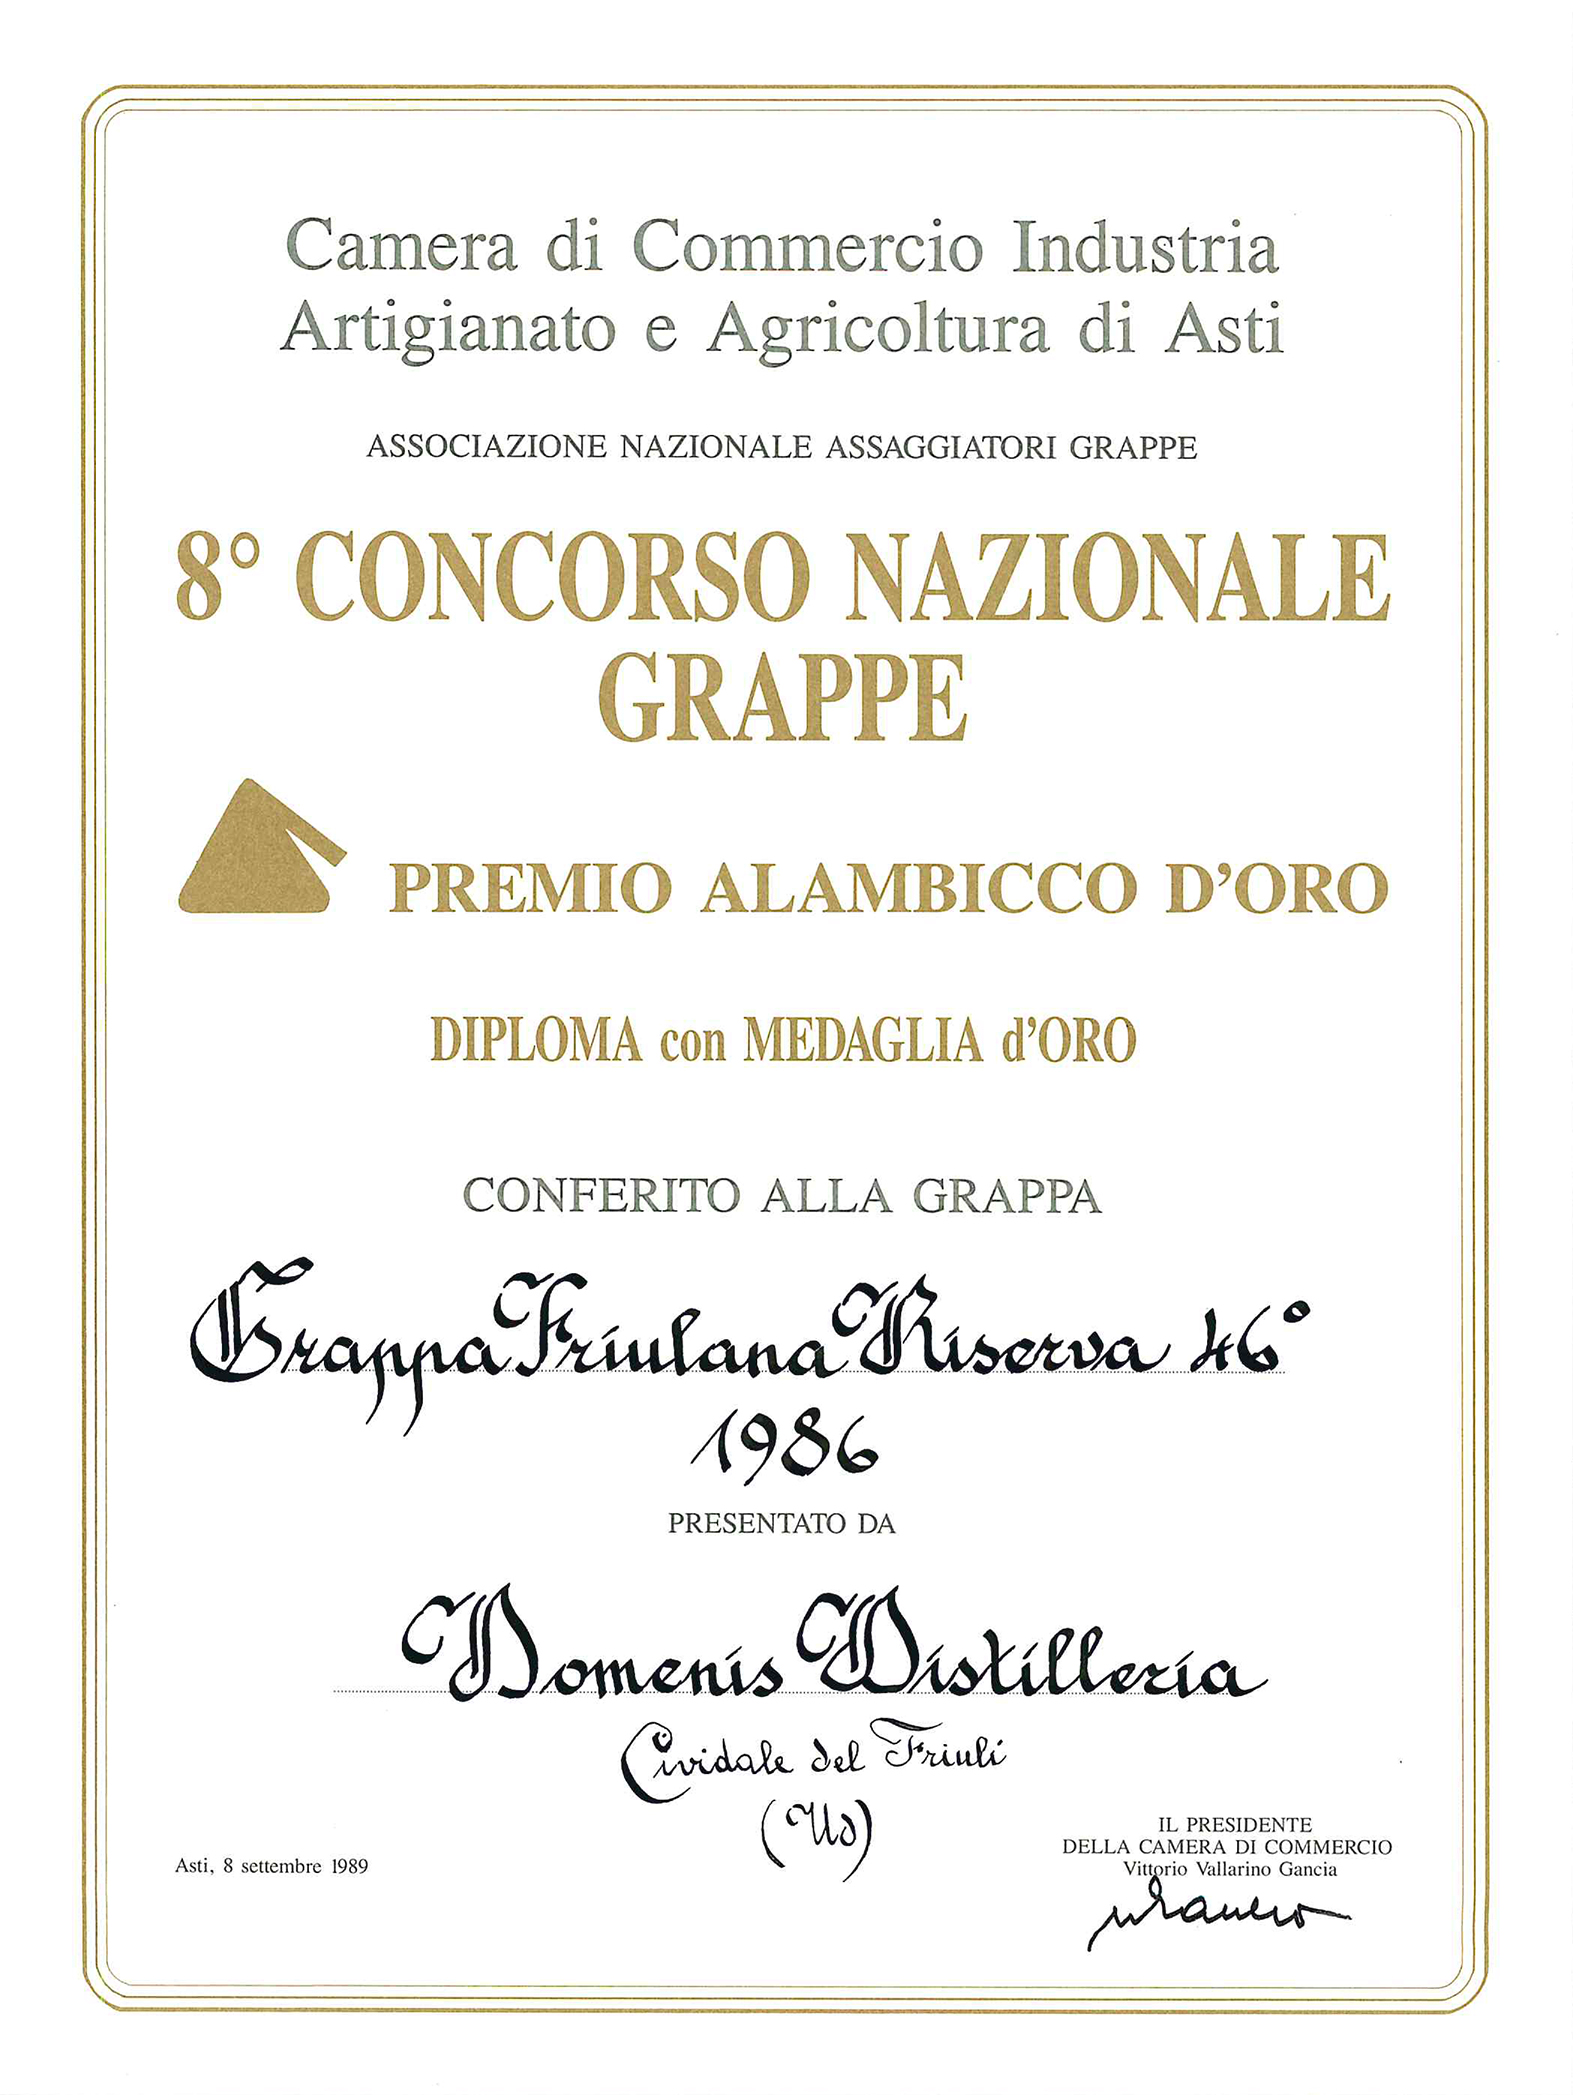 Premio Alambicco d’Oro 1989 – Grappa Friulana Riserva 46° 1986